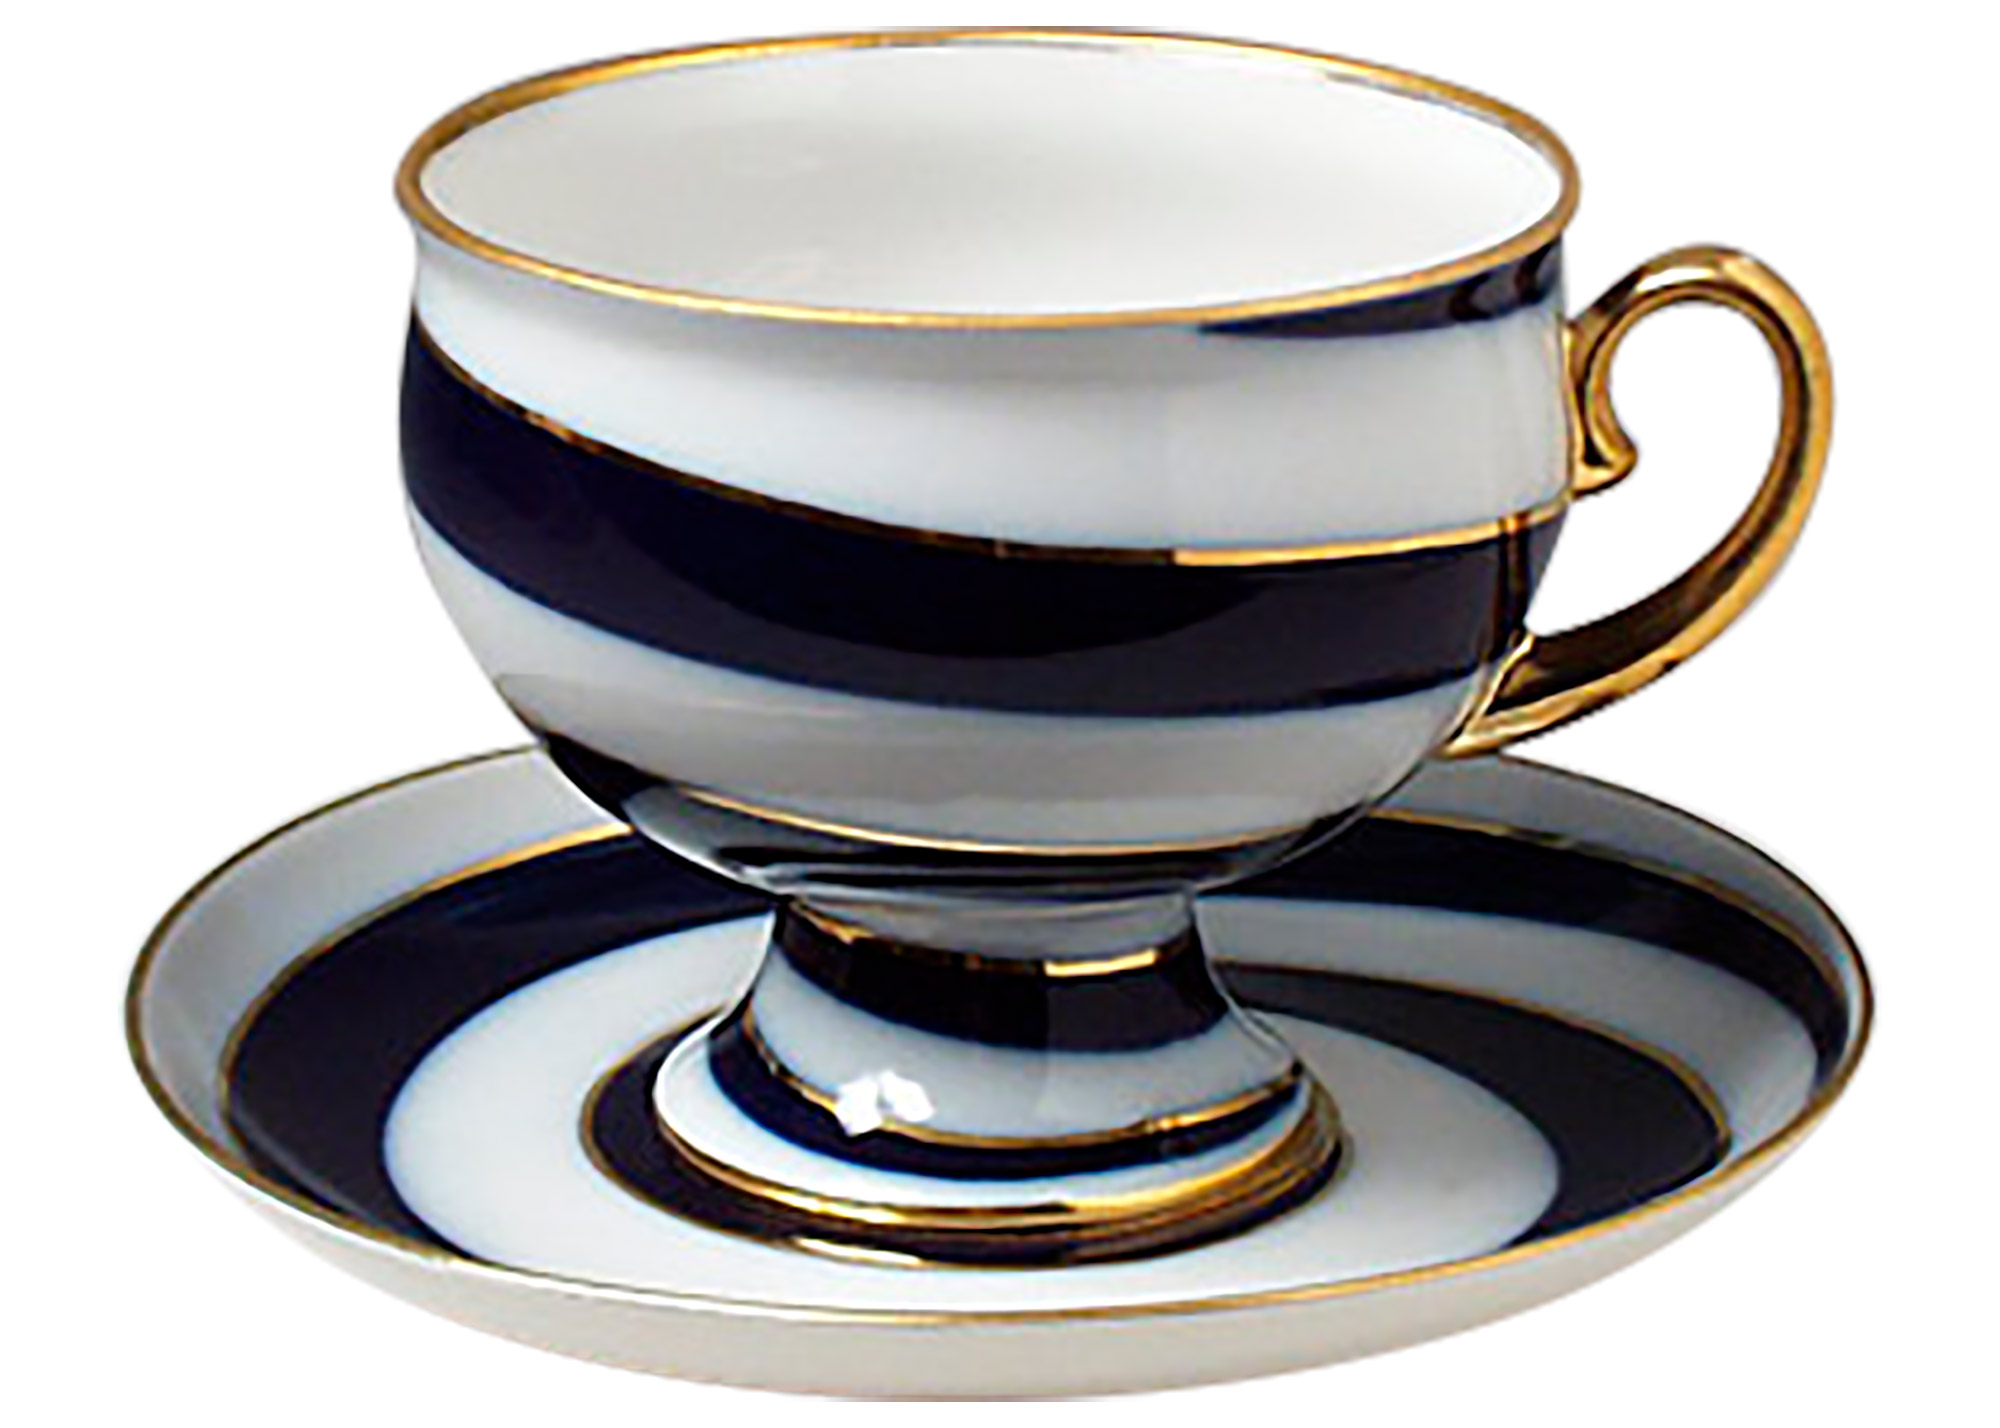 Buy Serpentine Porcelain Cup & Saucer at GoldenCockerel.com